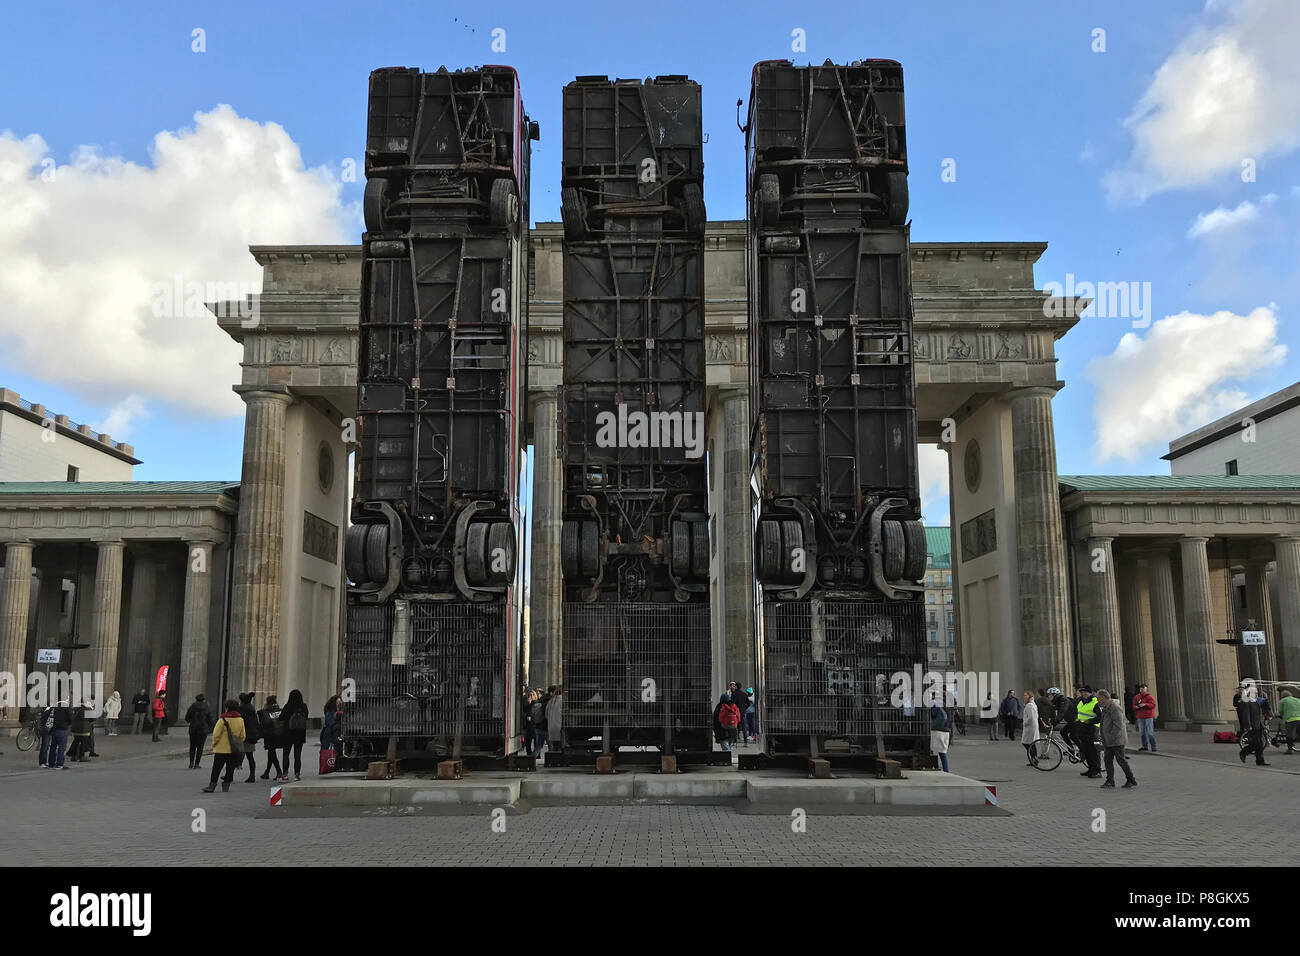 Berlino, Germania, anti-guerra monumento di scultura dall'artista German-Syrian Manaf Halbouni davanti alla Porta di Brandeburgo Foto Stock